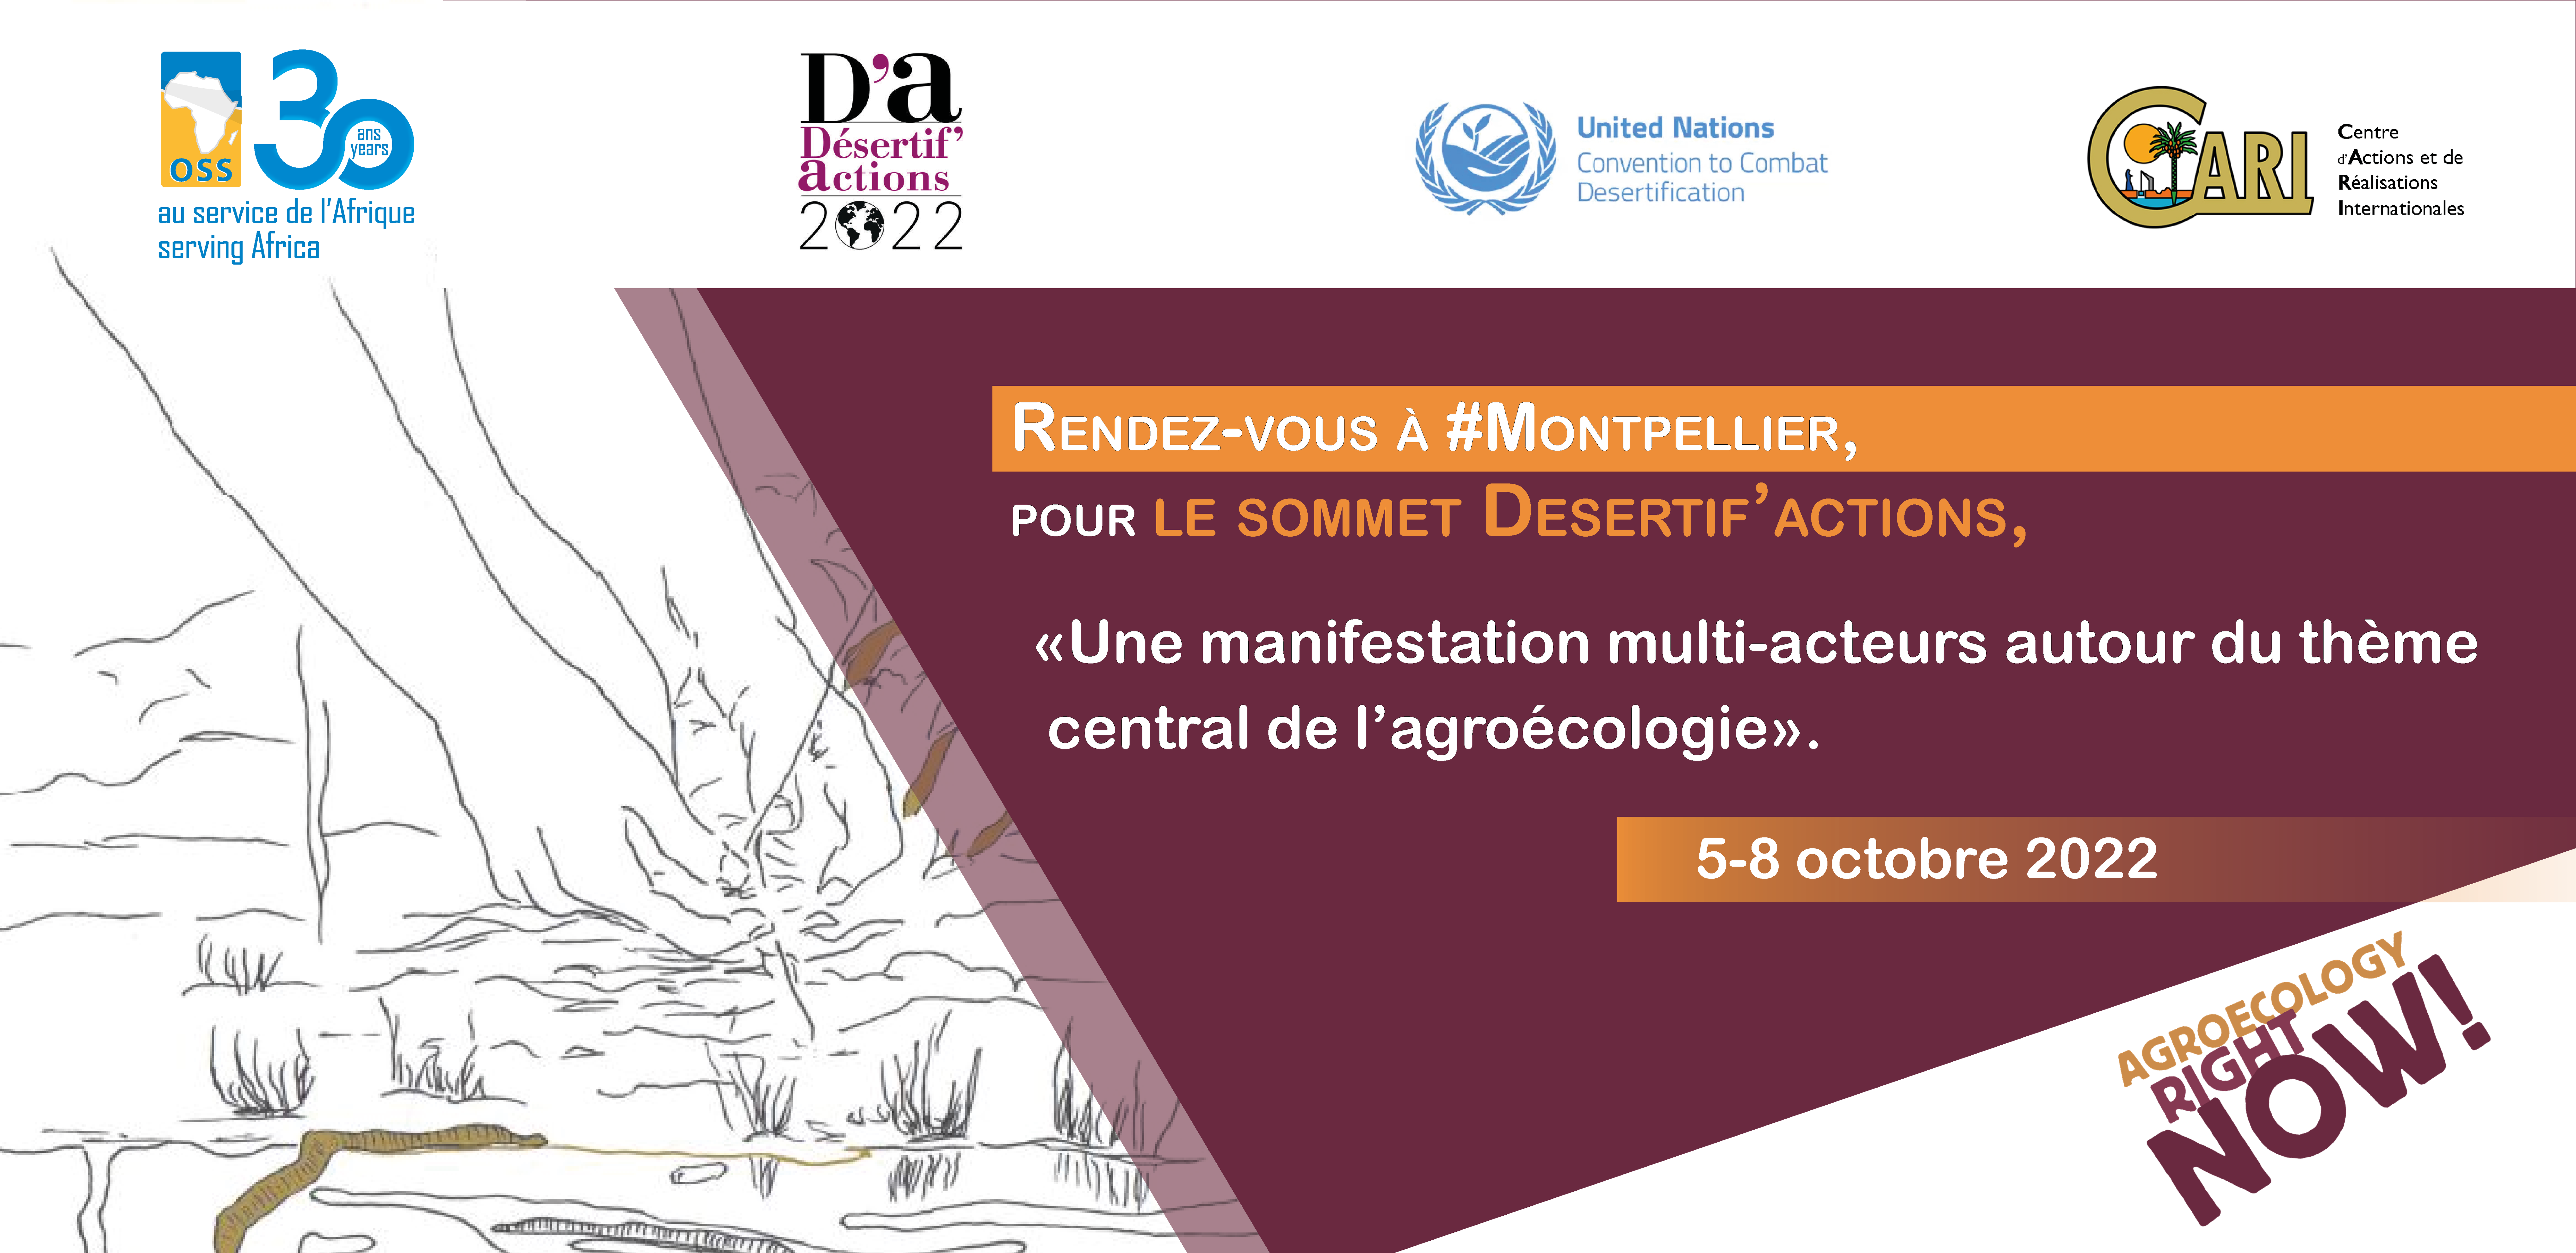  Le 5e Sommet International DA22, Montpellier, 5 - 8 octobre 2022